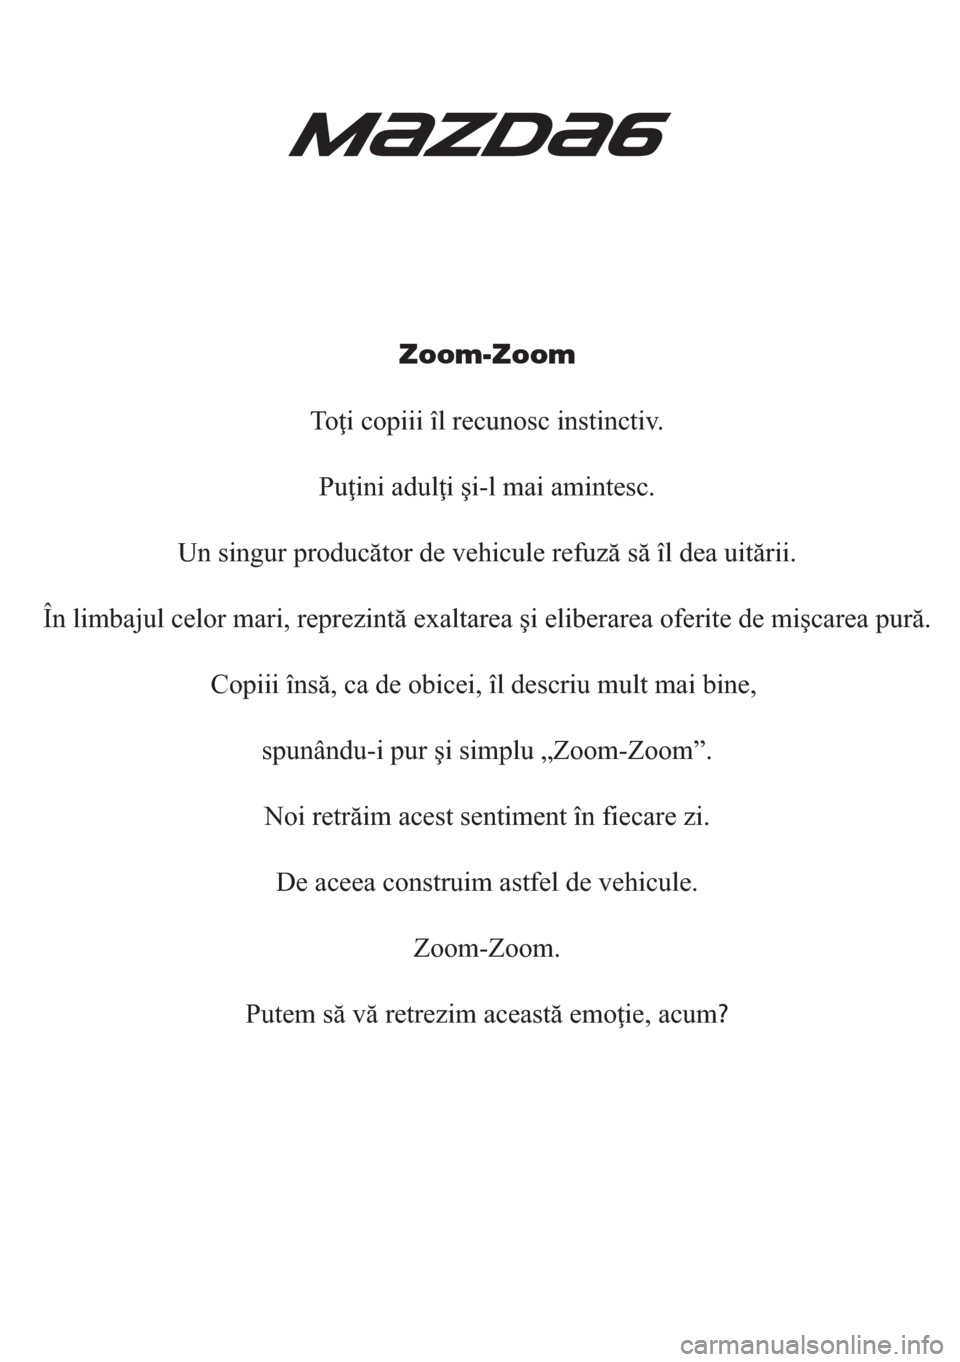 MAZDA MODEL 6 2018  Manualul de utilizare (in Romanian) Zoom-Zoom
Toţi copiii îl recunosc instinctiv.
Puţini adulţi şi-l mai amintesc.
Un singur producător de vehicule refuză să îl dea uitării.
În limbajul celor mari, reprezintă exaltarea şi e